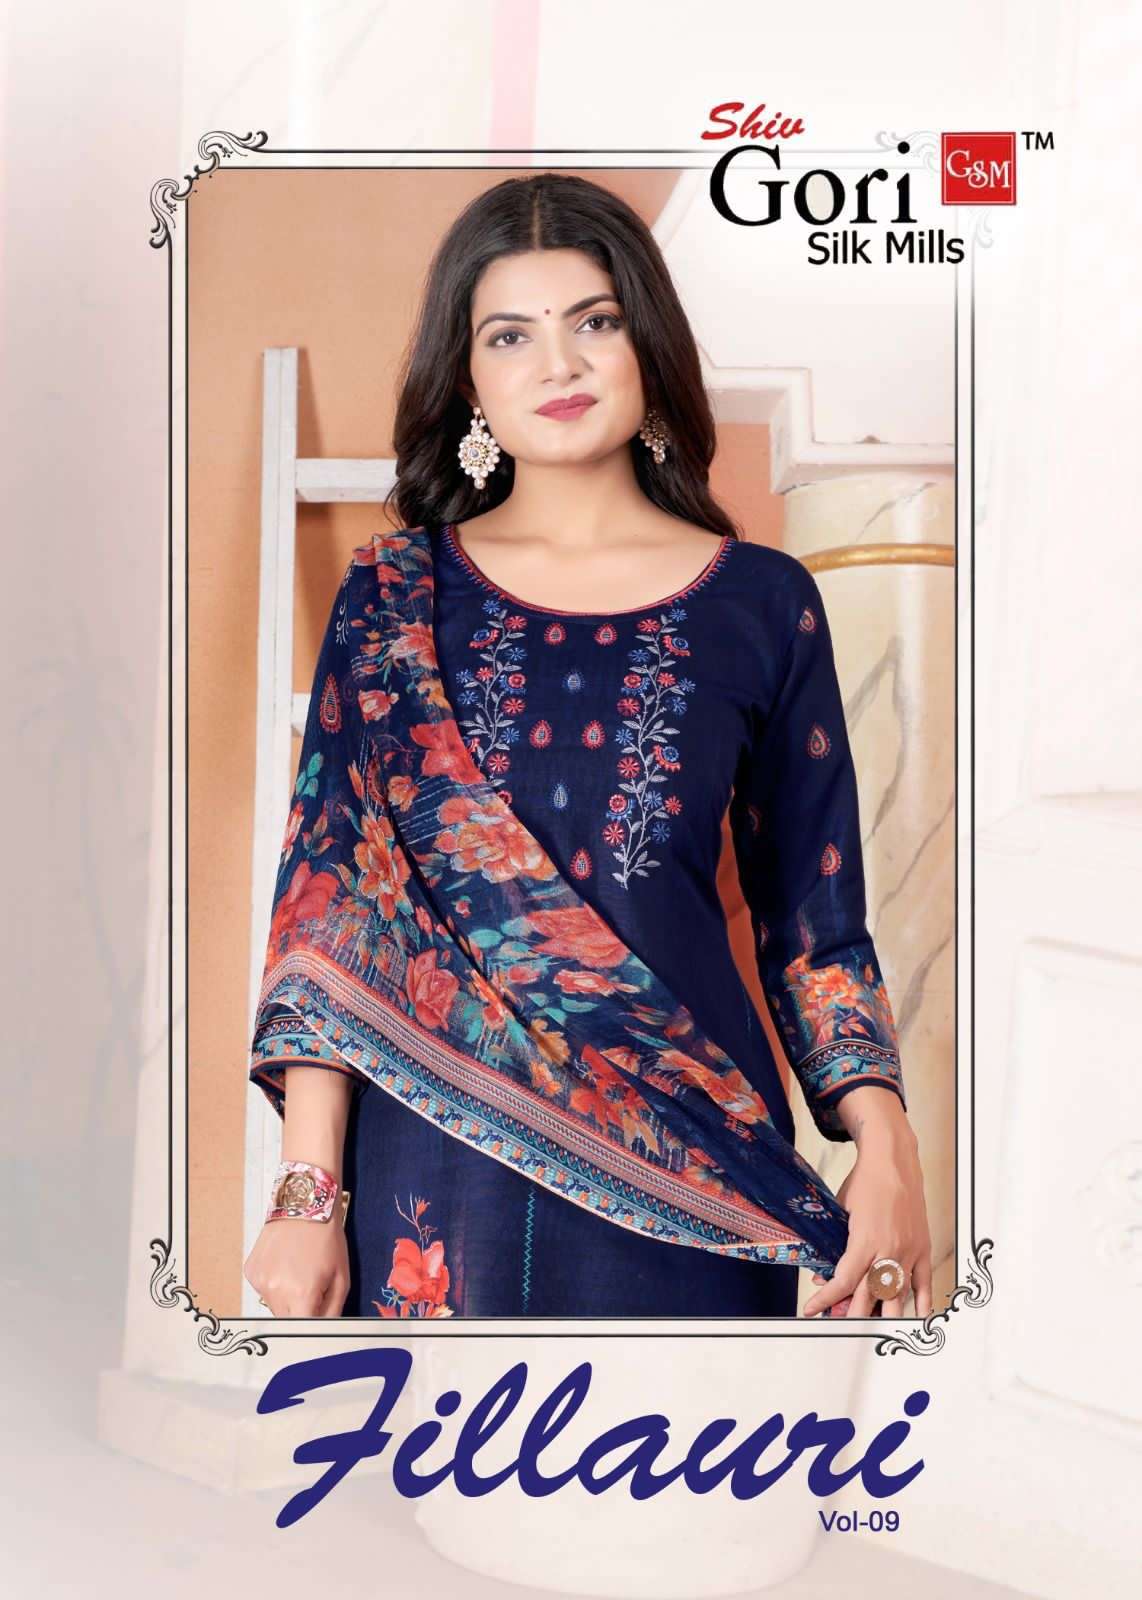 Shiv Gori Fillauri Vol 9 Cotton Dress Material Catalog Supplier